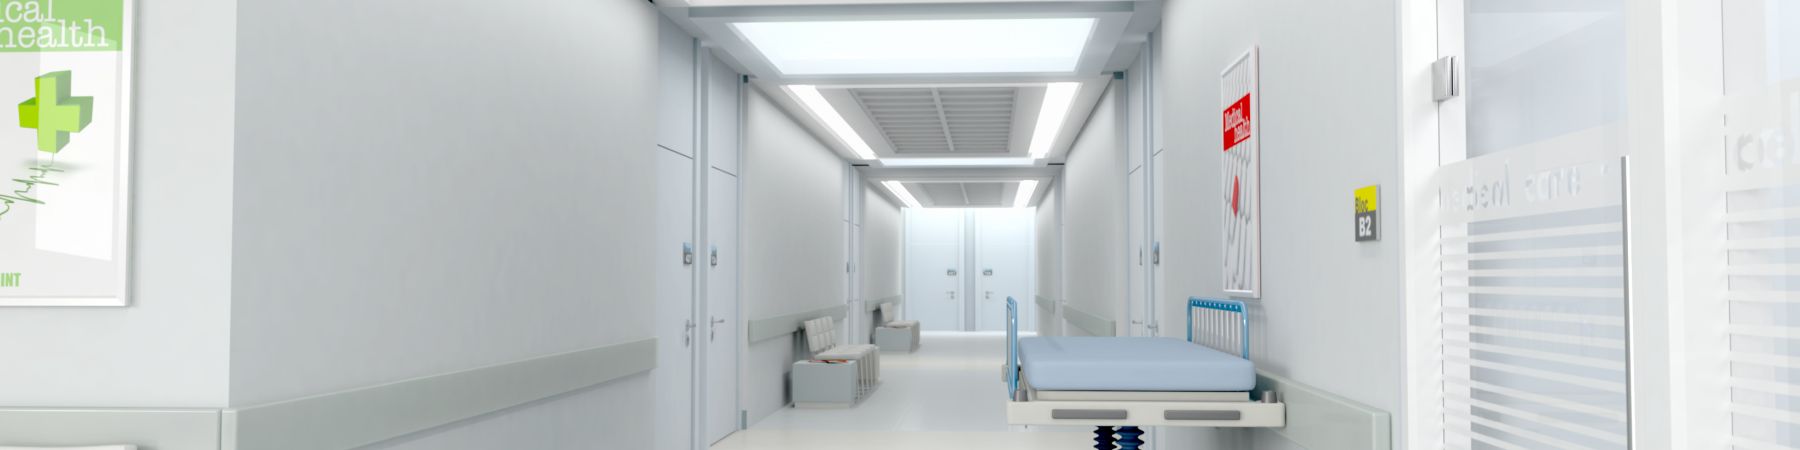 نصب و اجرای سیستم تهویه مطبوع بیمارستان و بیمارستانی - مانا تهویه